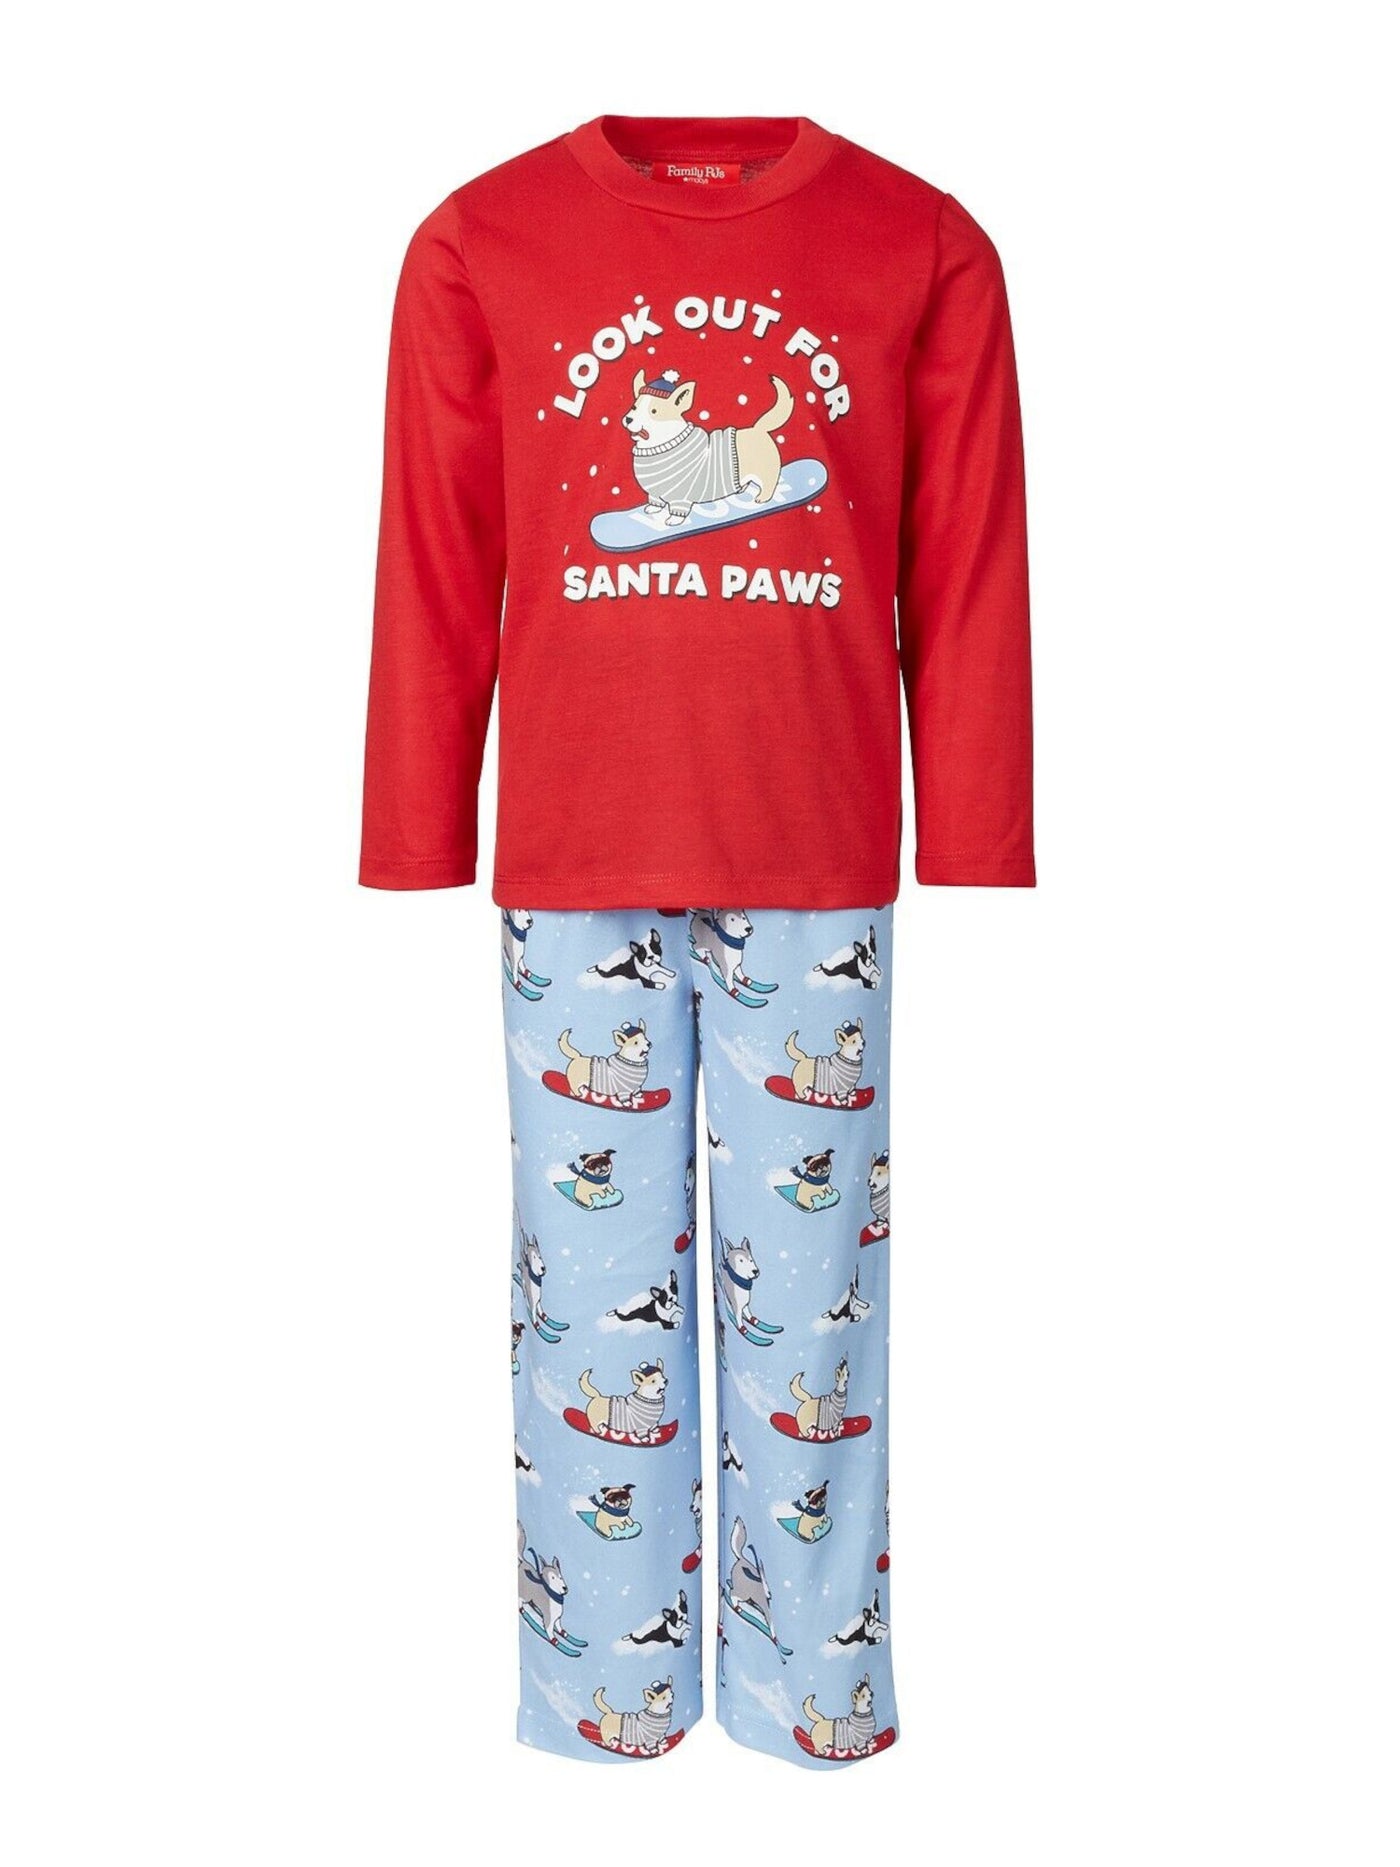 FAMILY PJs Intimates Red Sleep Shirt Pajama Top M